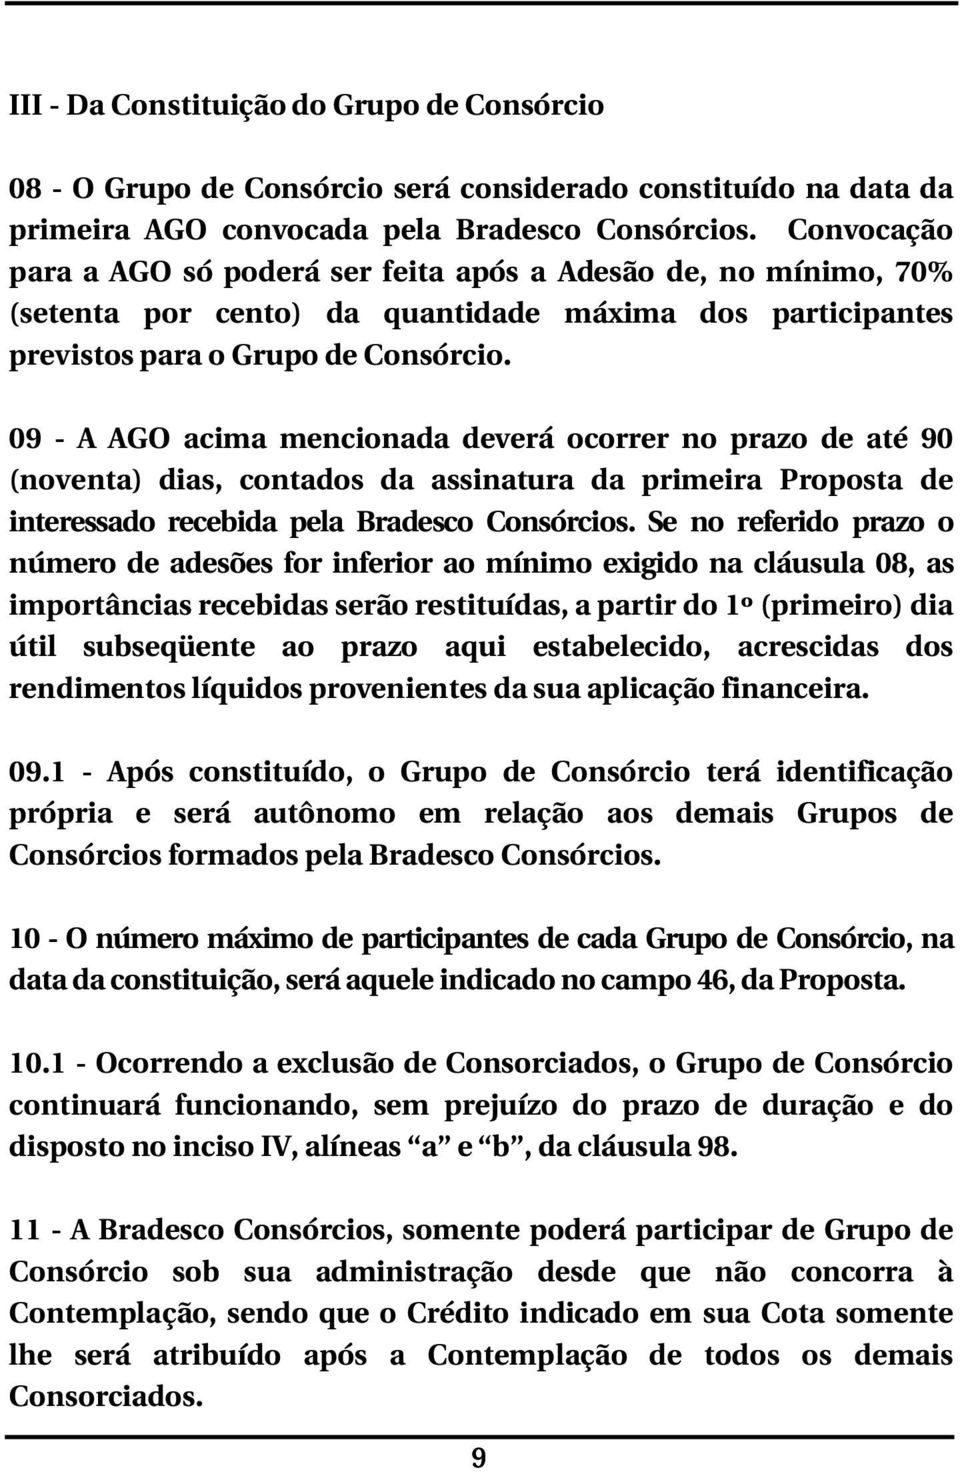 09 - A AGO acima mencionada deverá ocorrer no prazo de até 90 (noventa) dias, contados da assinatura da primeira Proposta de interessado recebida pela Bradesco Consórcios.